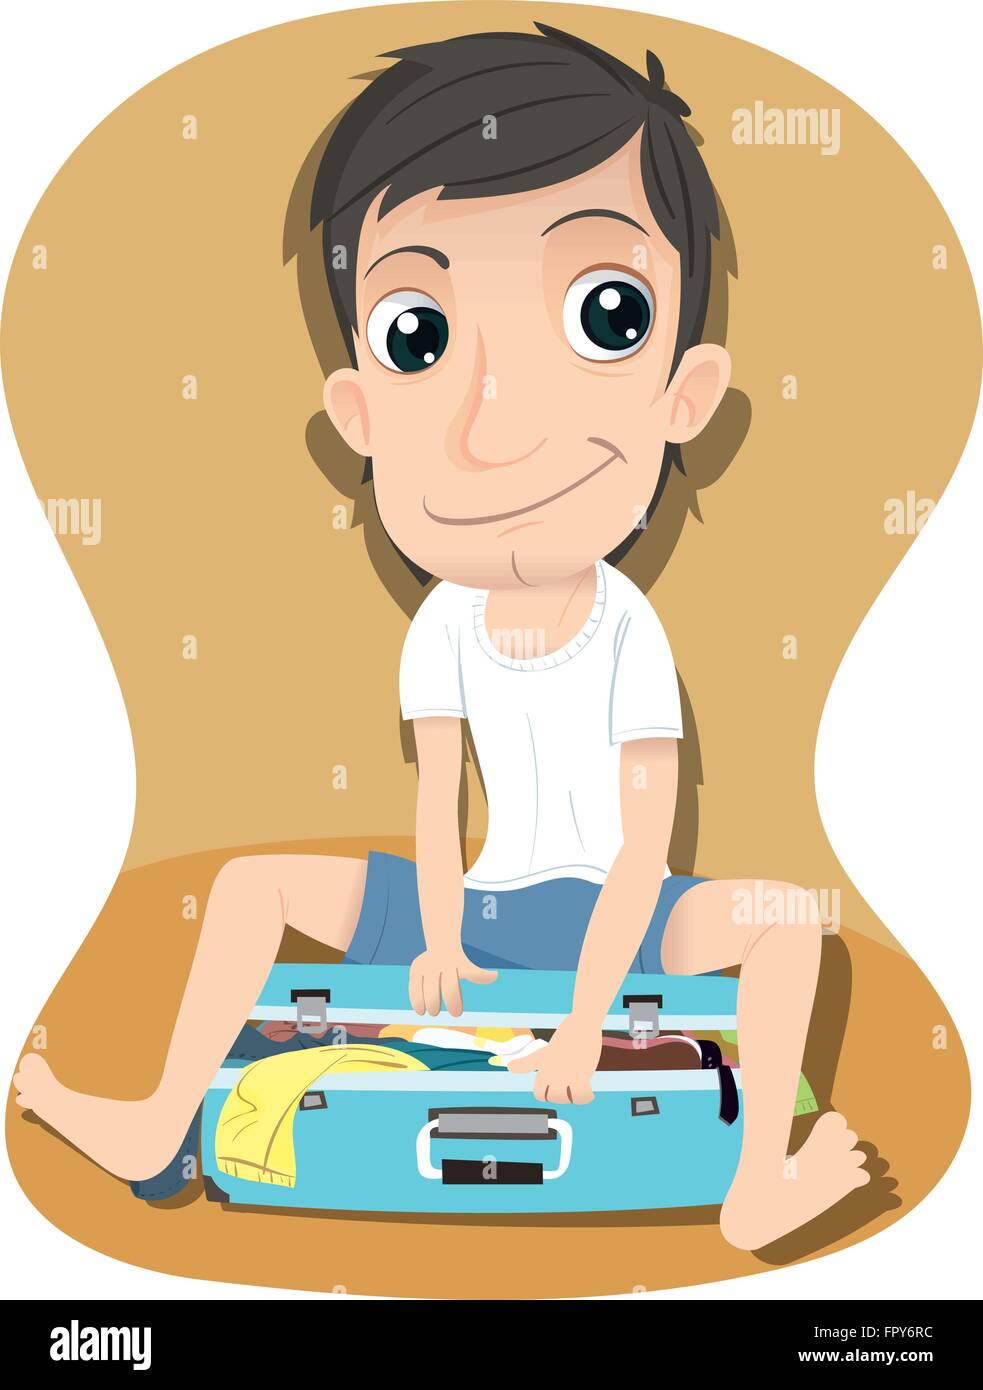 cartoon man packing travel bag Stock Vector Image & Art - Alamy